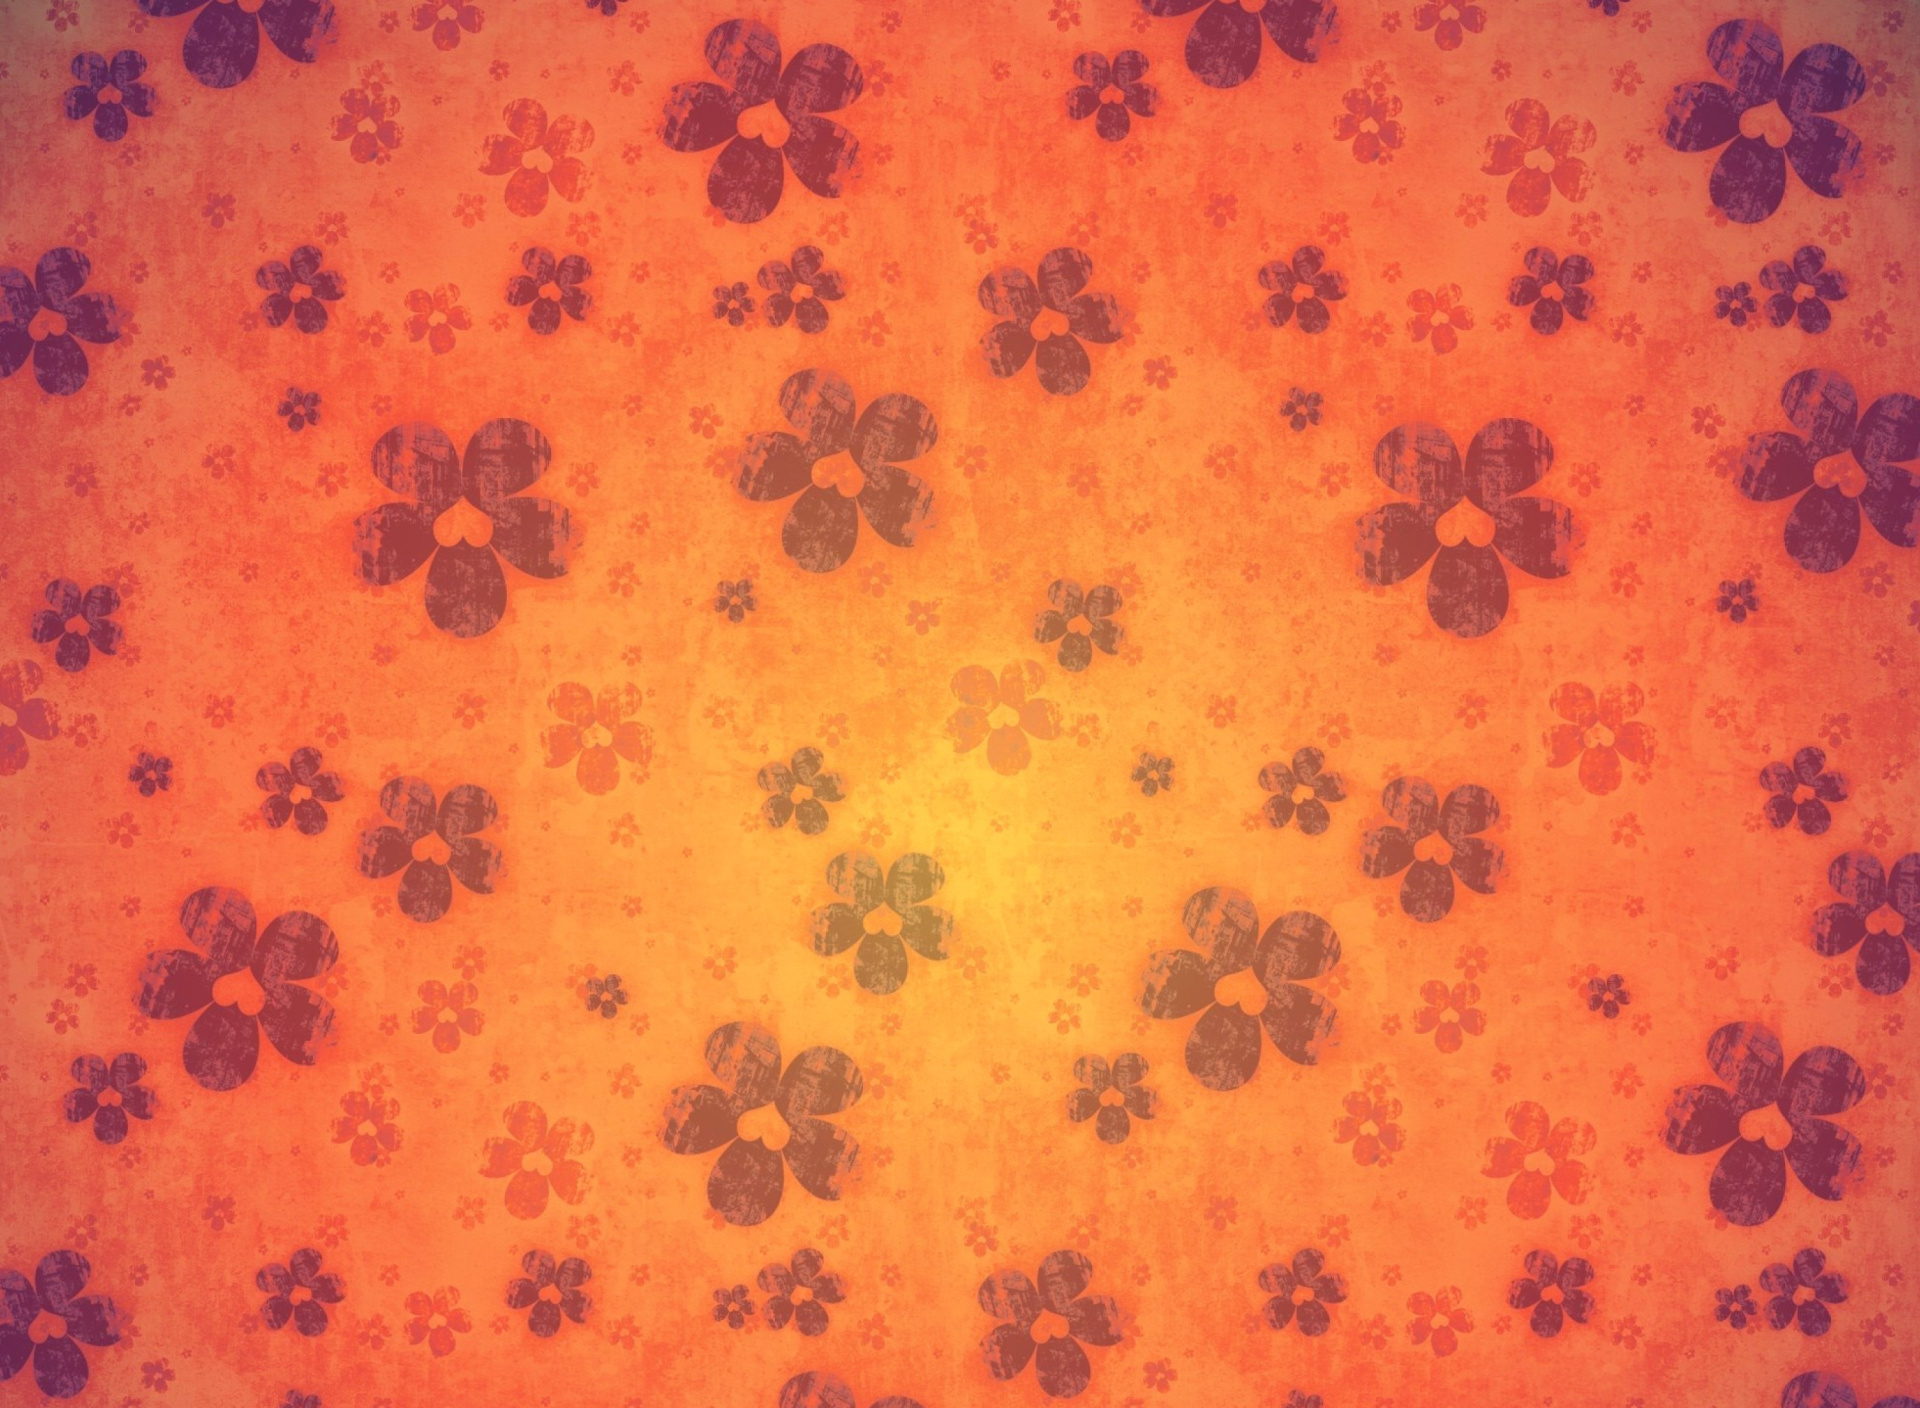 Das Flowers Texture Wallpaper 1920x1408